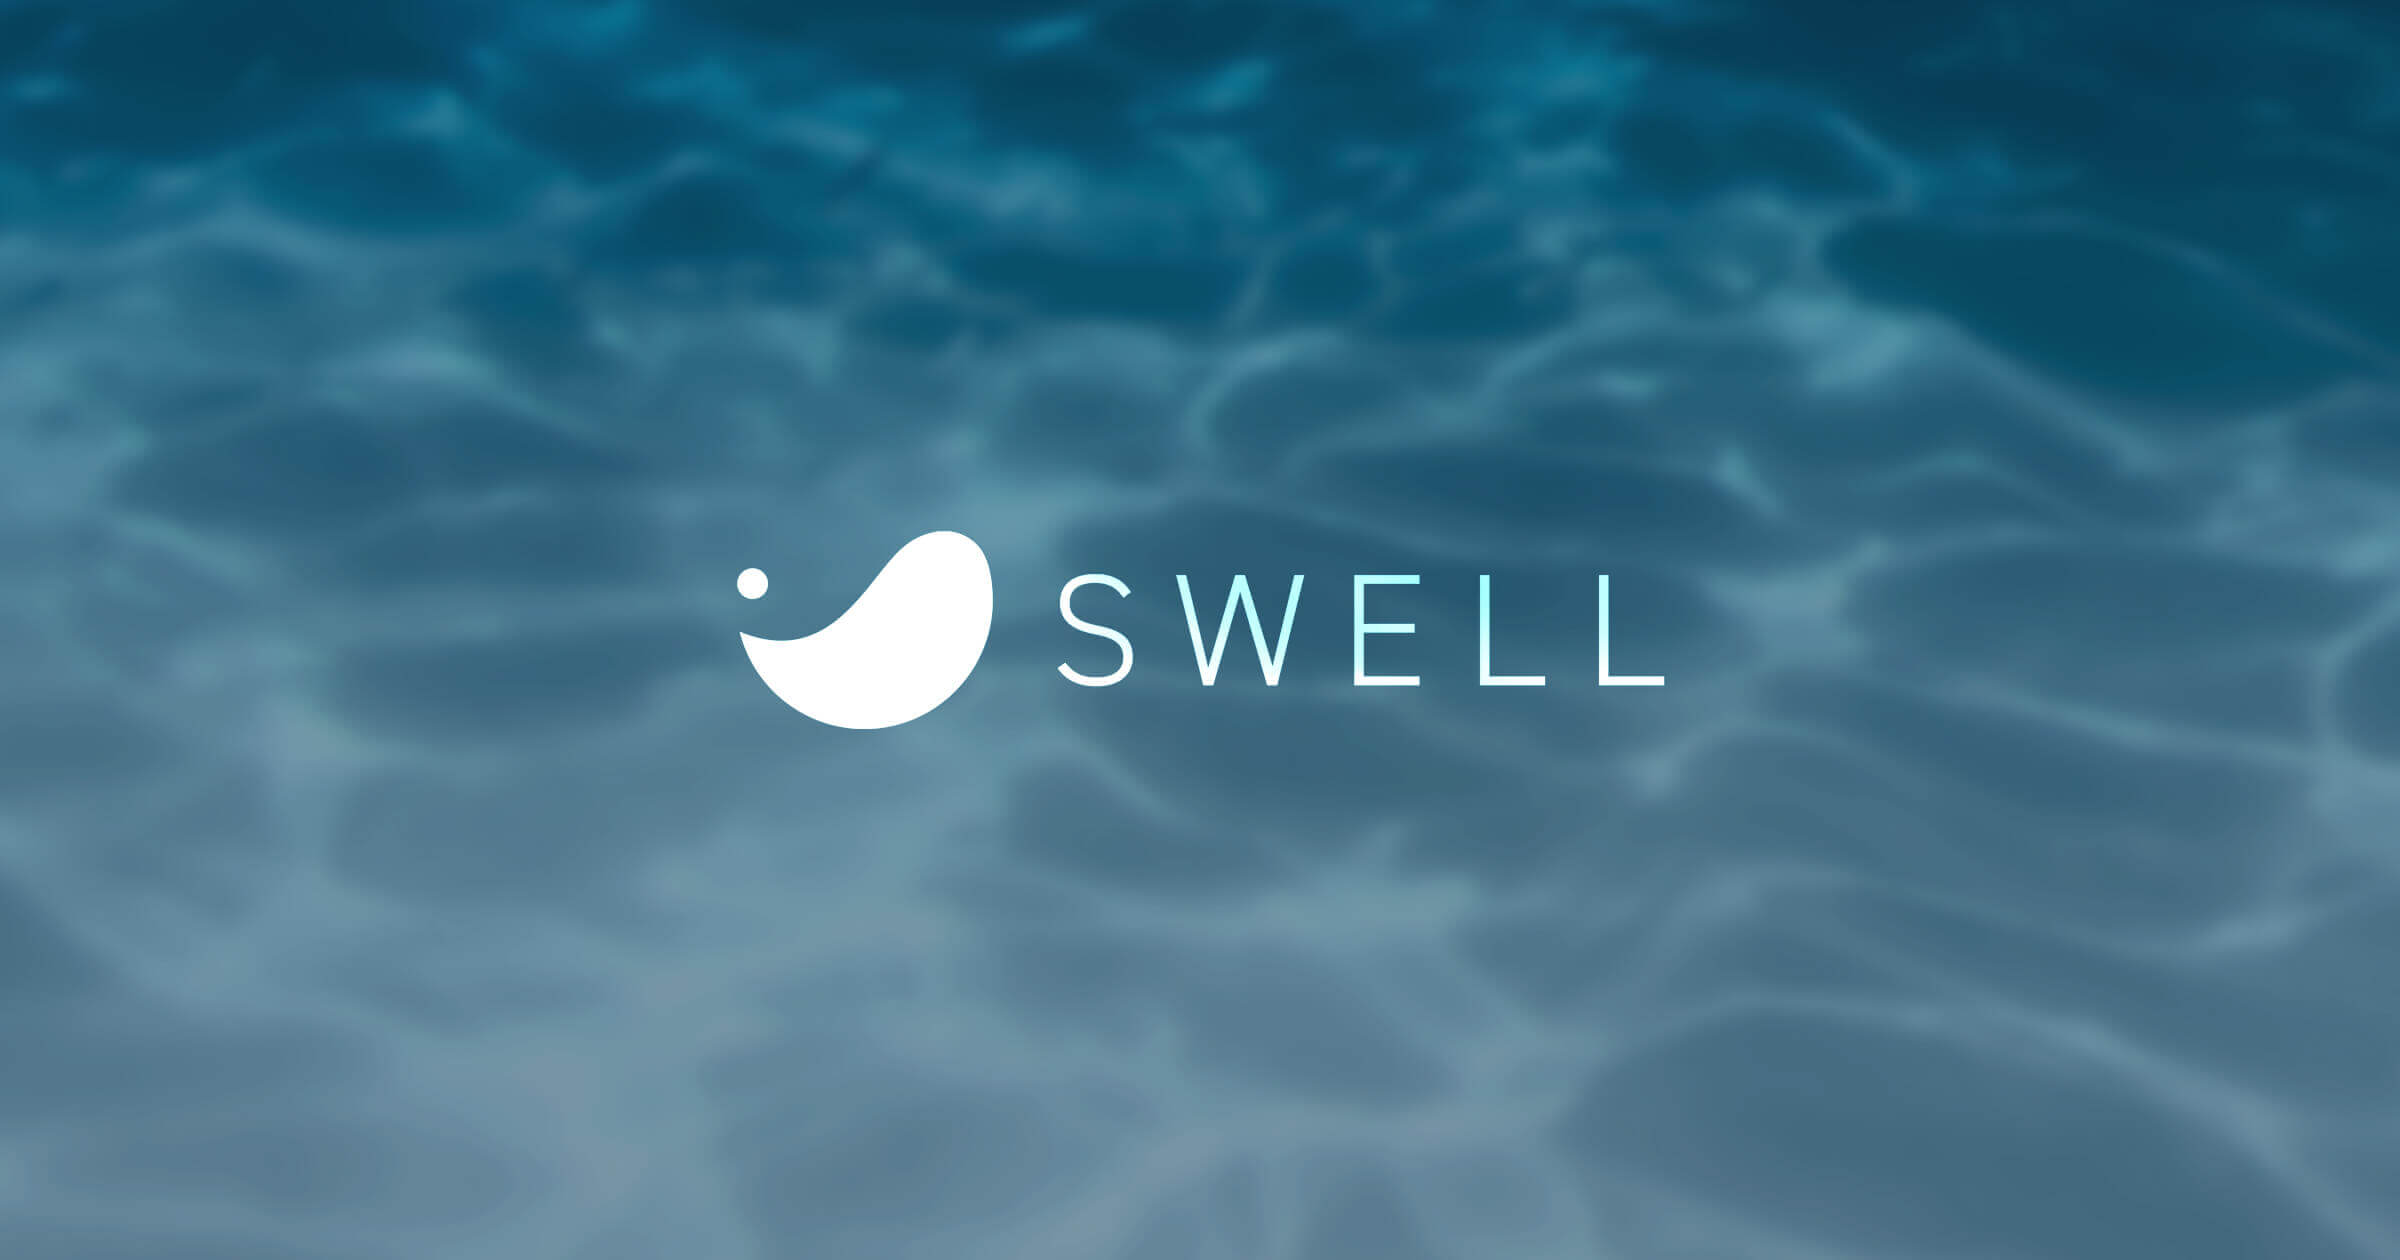 The featured image of SWELL | シンプル美と機能性の両立 - 圧倒的な使い心地を追求するWordPressテーマ